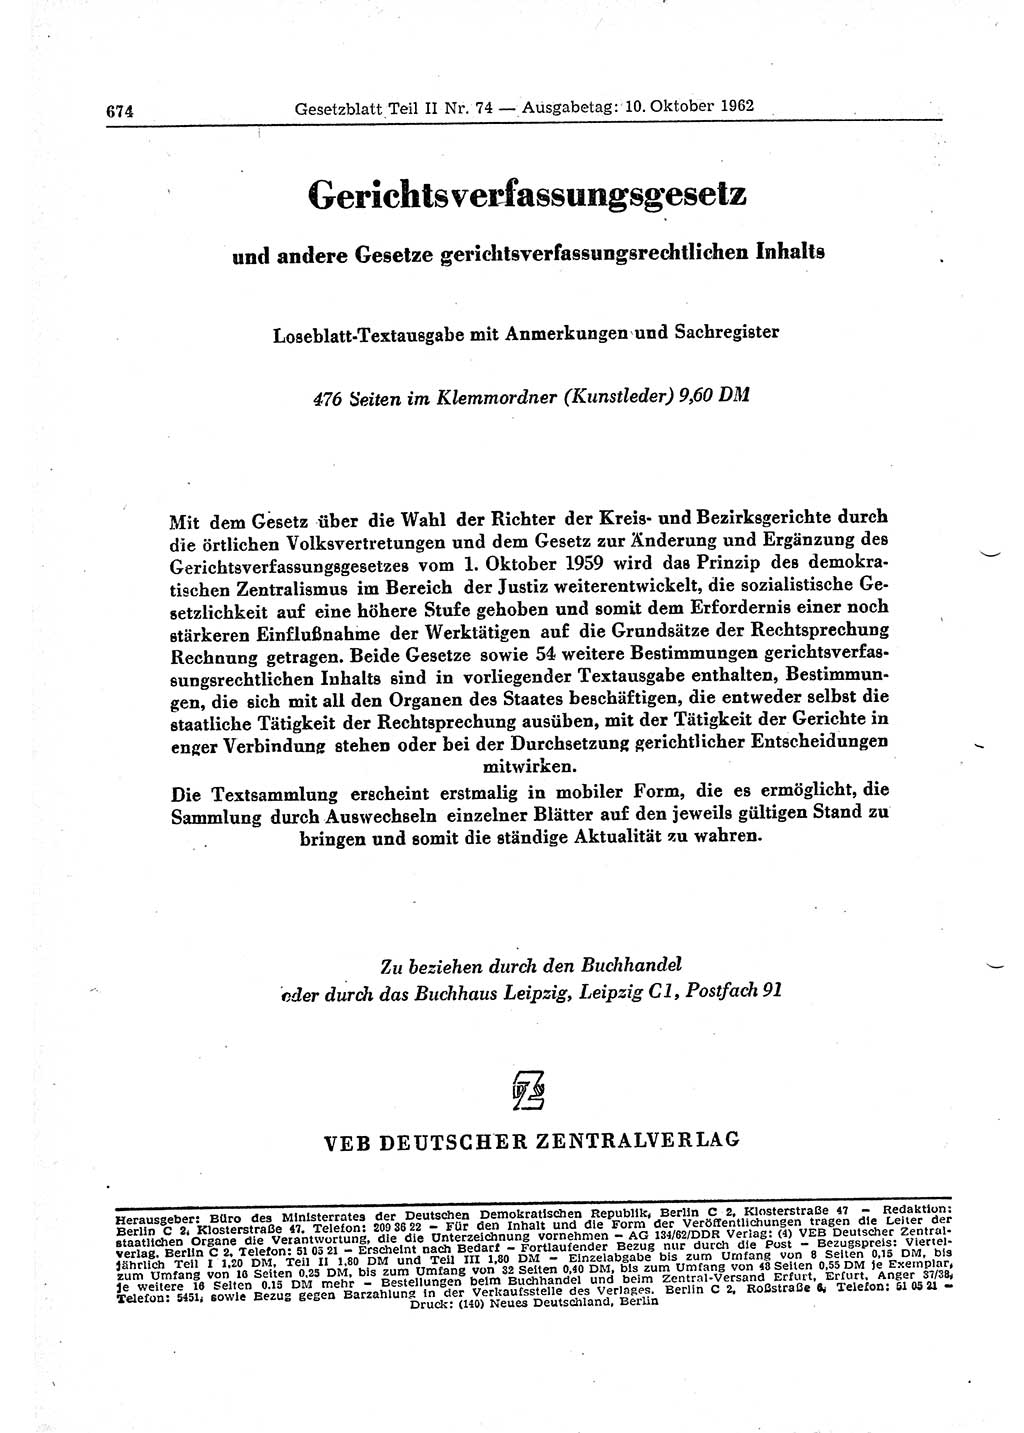 Gesetzblatt (GBl.) der Deutschen Demokratischen Republik (DDR) Teil ⅠⅠ 1962, Seite 674 (GBl. DDR ⅠⅠ 1962, S. 674)